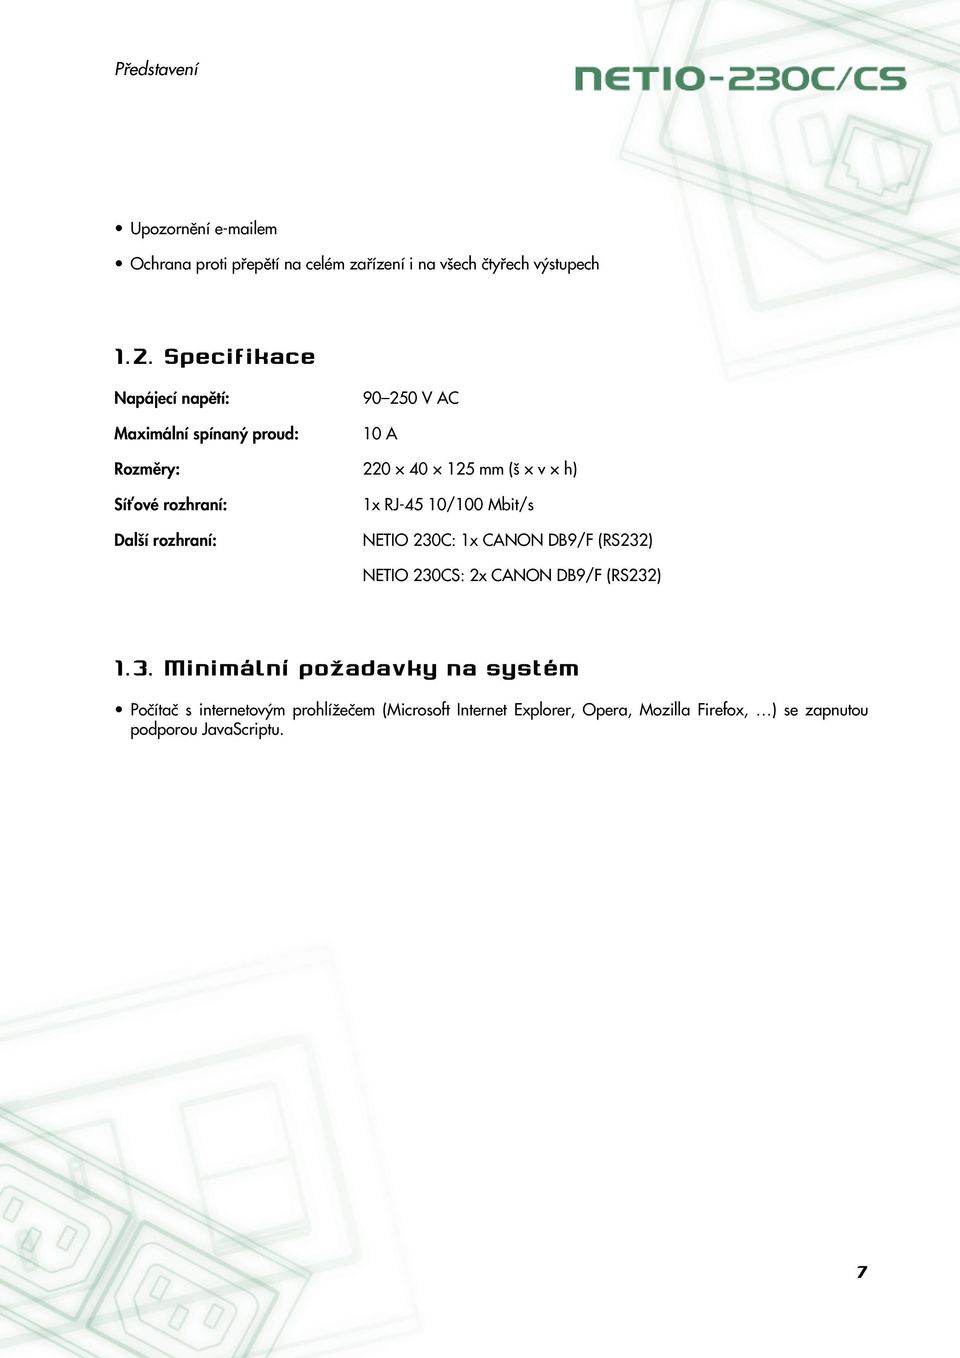 RJ-45 10/100 Mbit/s Další rozhraní: NETIO 230